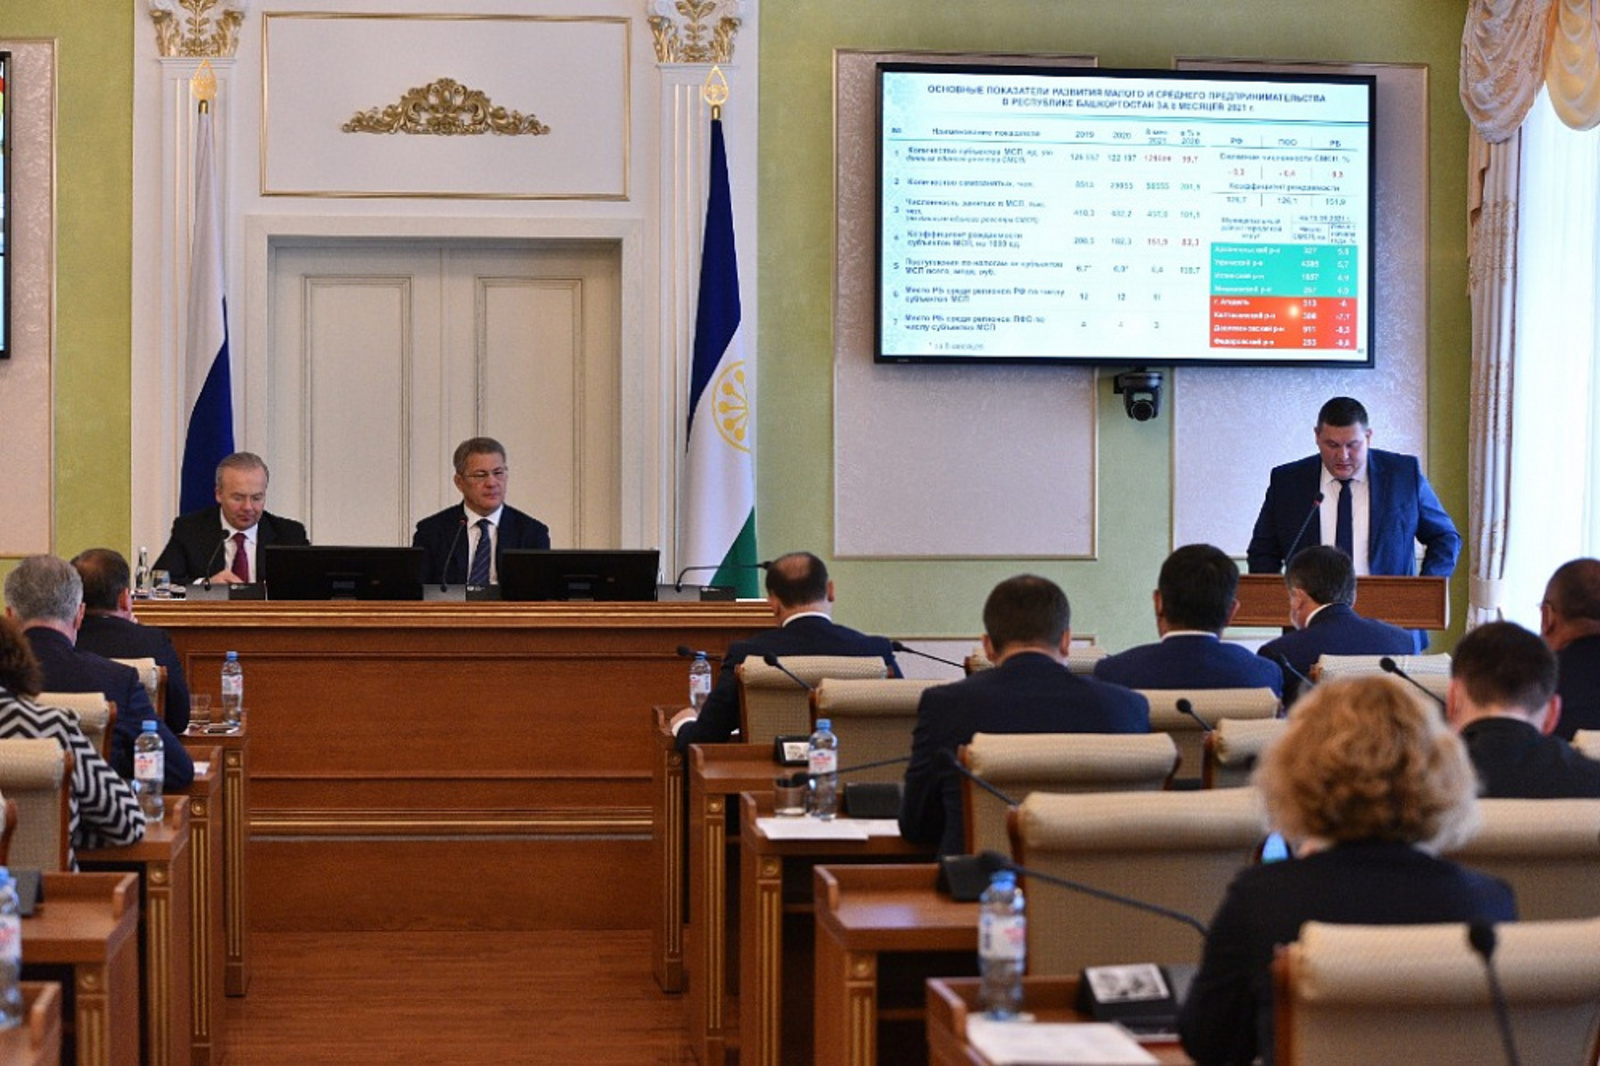 Бизнес-шерифы в Башкортостане сопровождают 2 117 инвестпроектов на общую сумму 264 млрд рублей